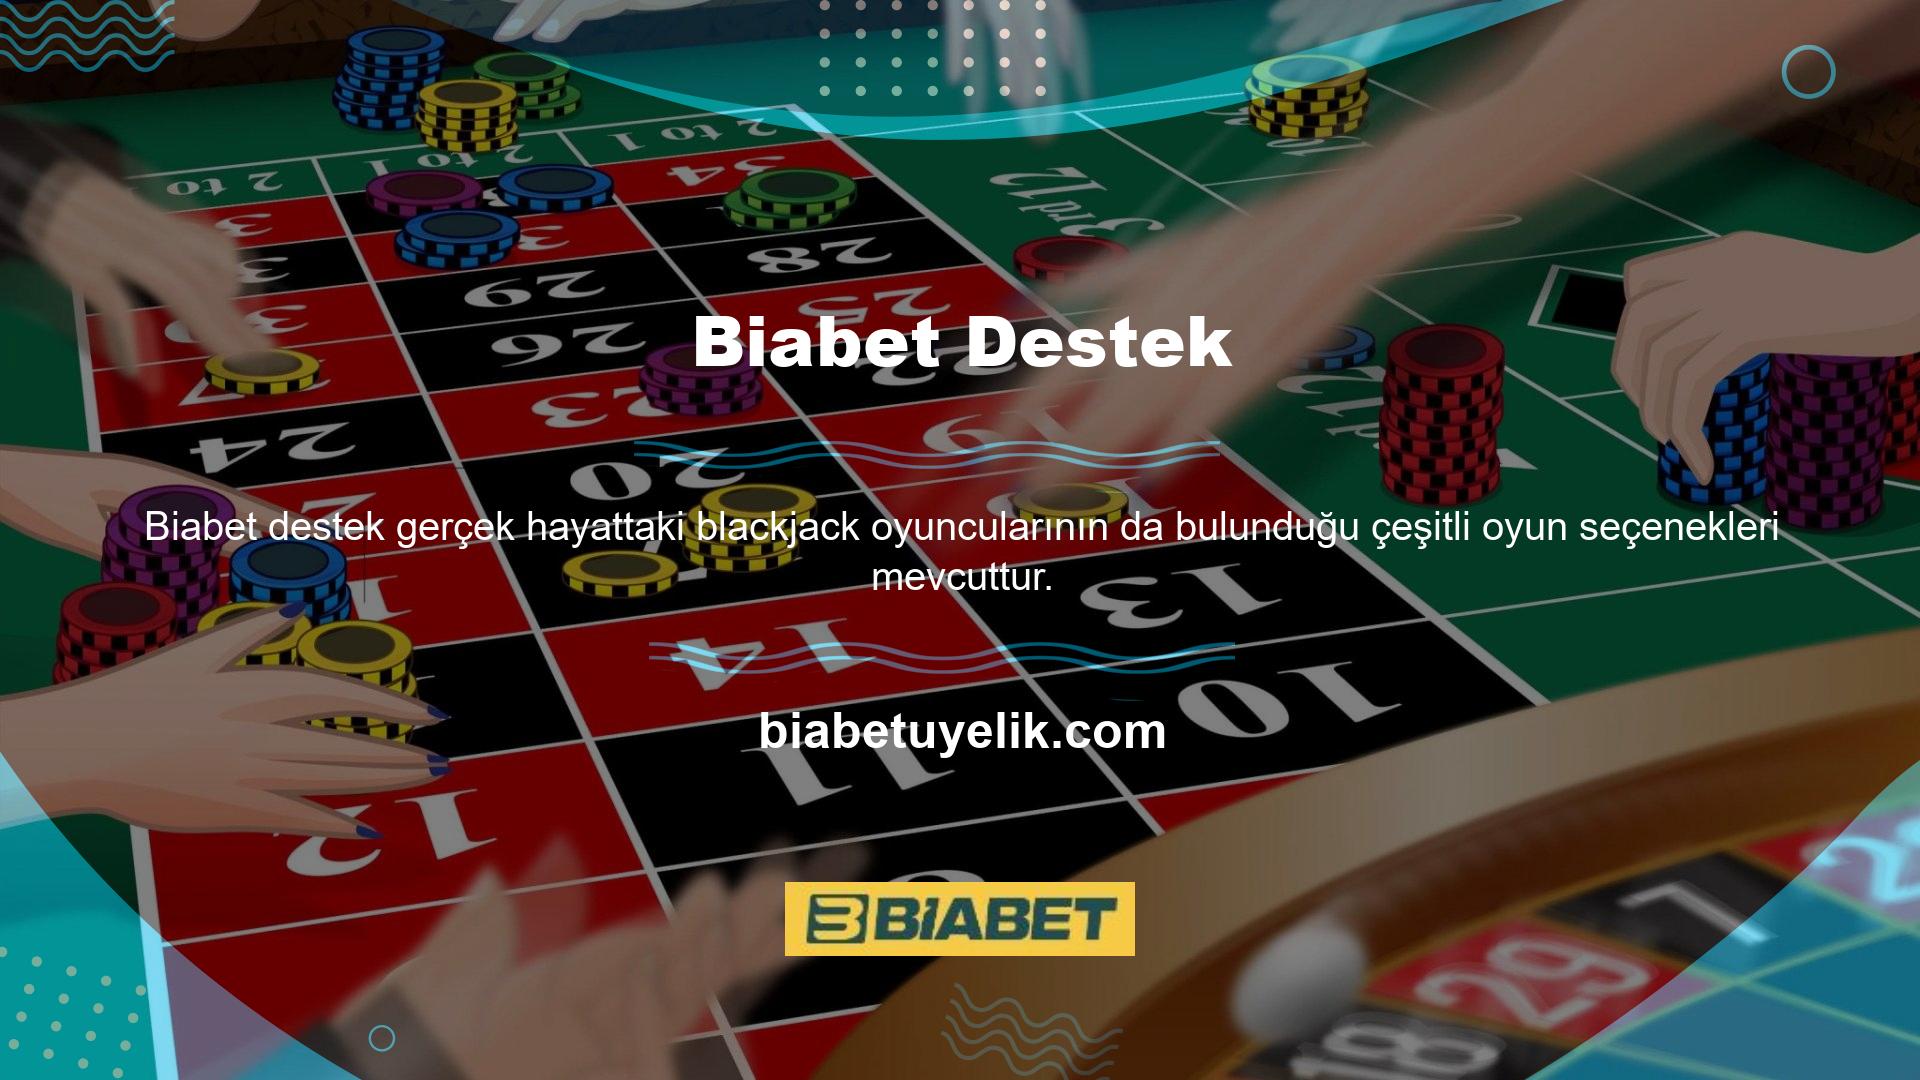 Blackjack, blackjack oyununa atıfta bulunmak için kullanılan küresel bir terimdir